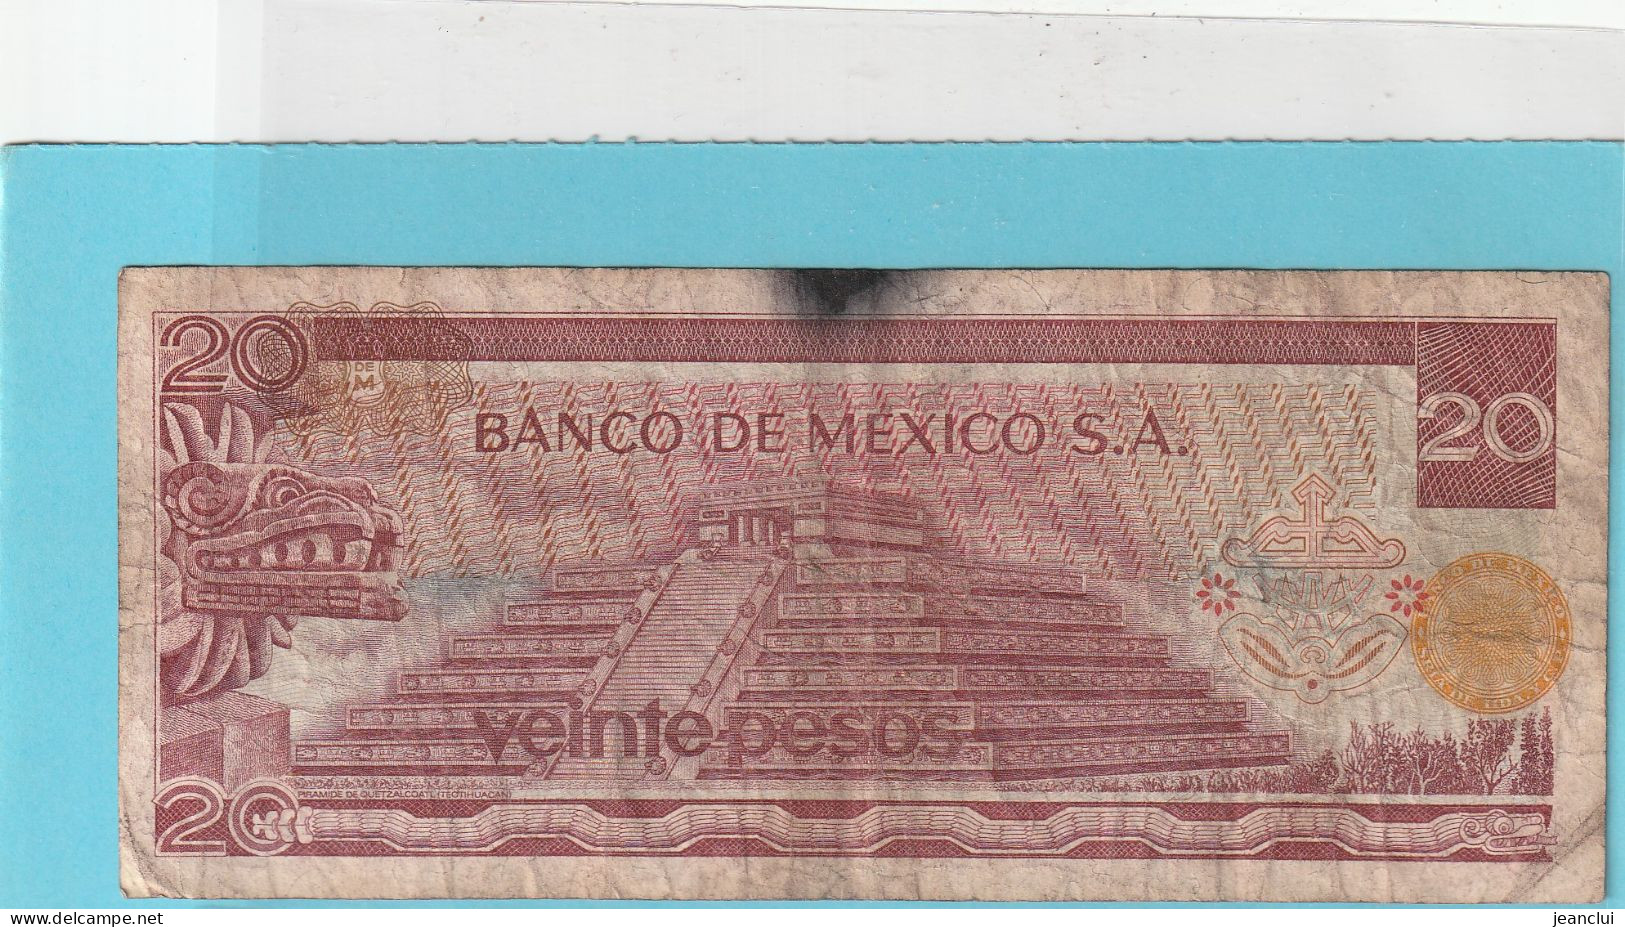 EL BANCO DE MEXICO S.A.   .  20 PESOS  .  18-7-1973  .  N°  L 8388428 .  2 SCANNES  .  BILLET TRES USITE - Mexico